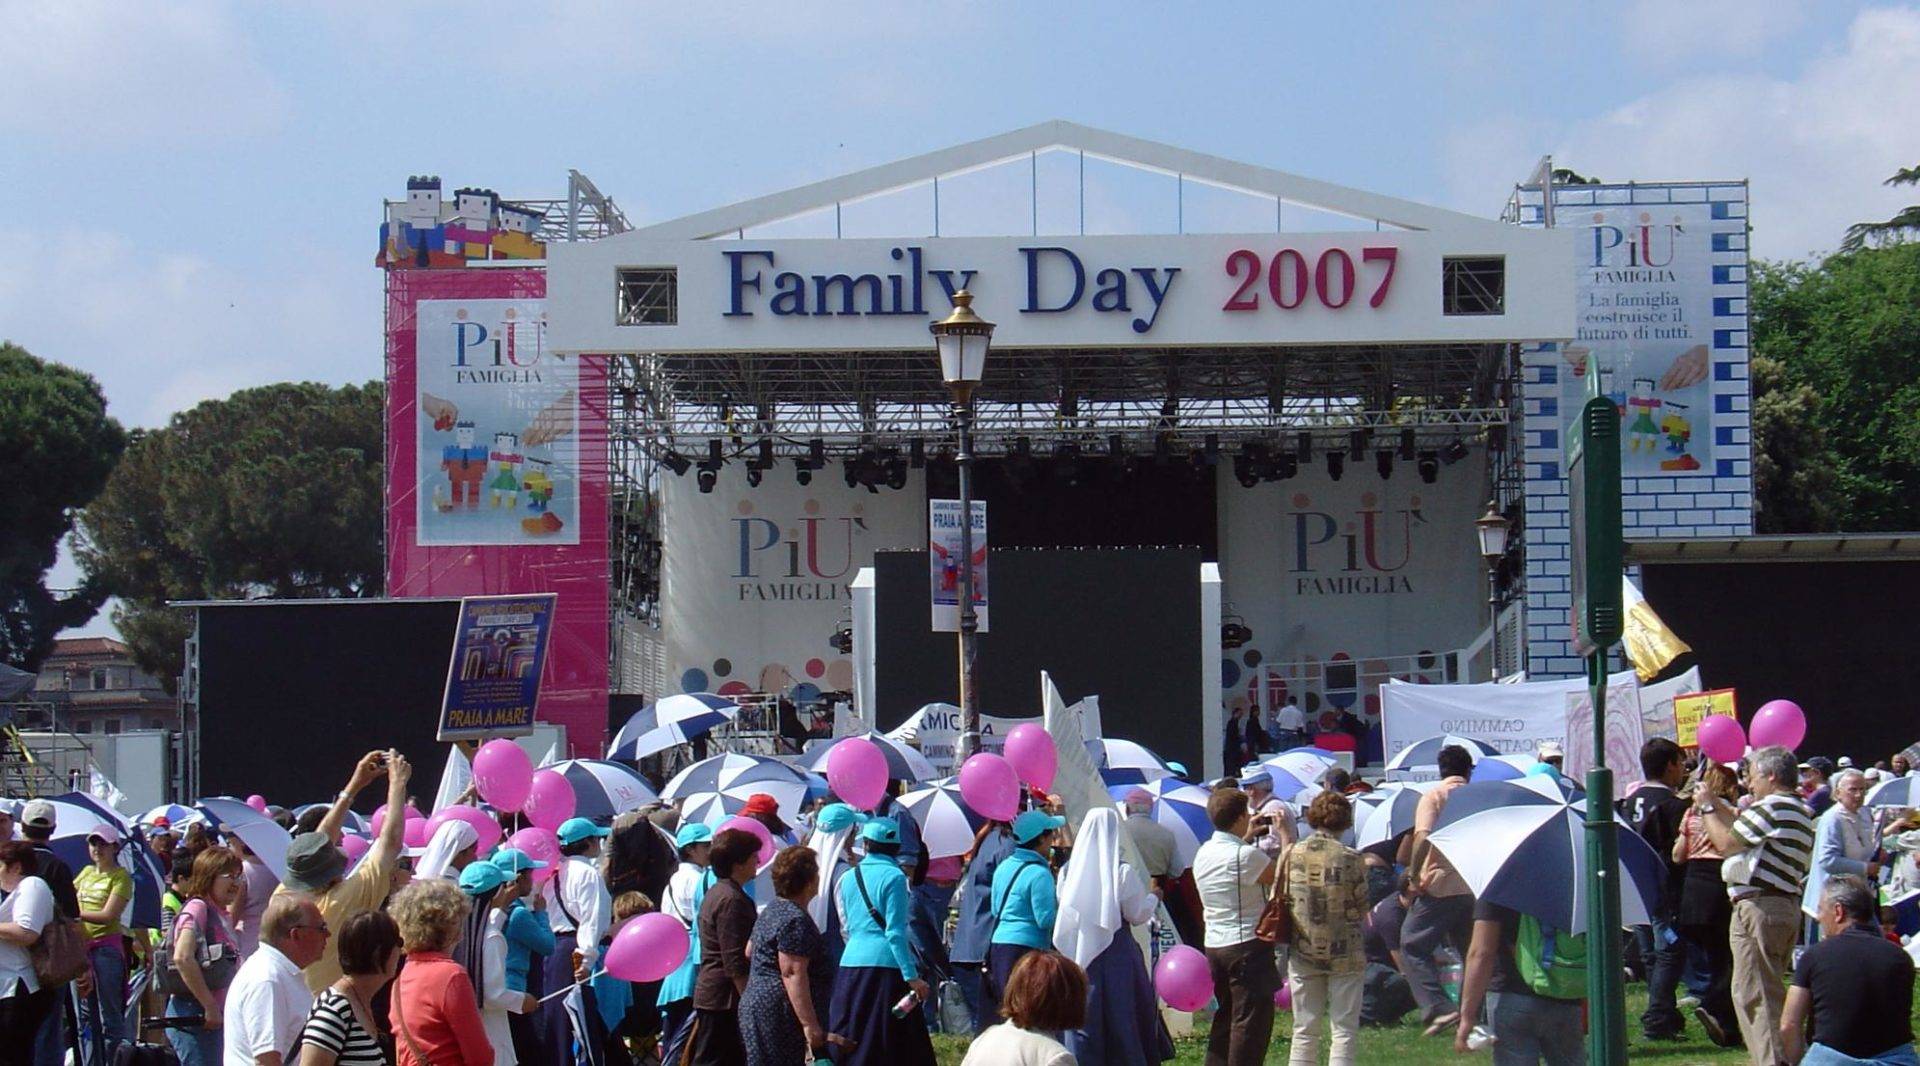 Una immagine del Family Day del 2007.